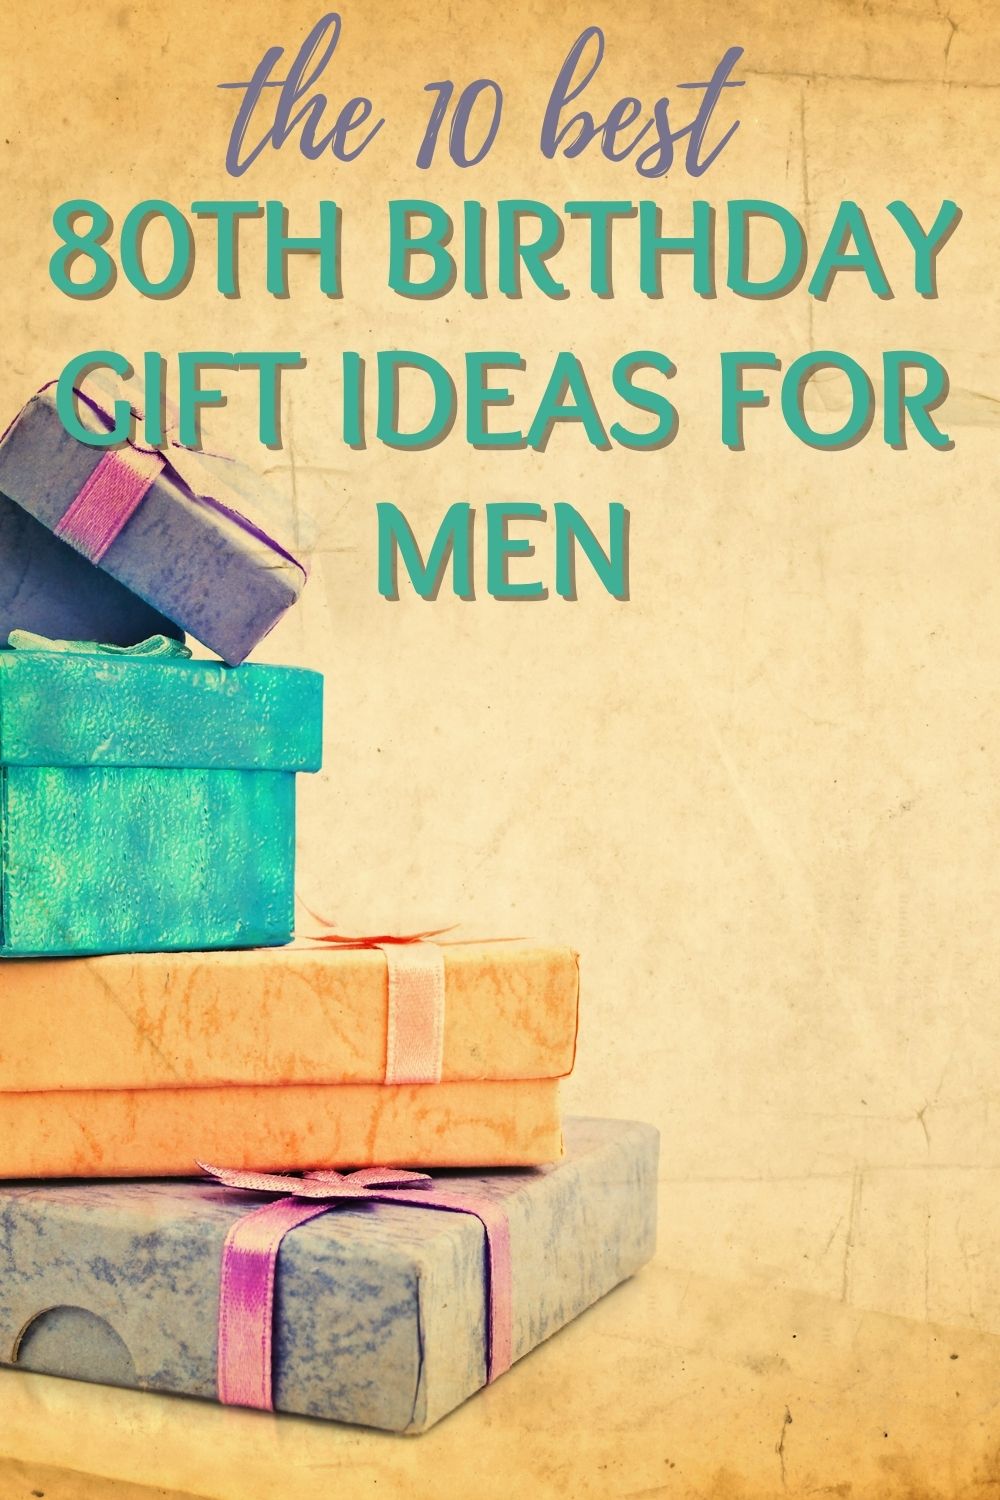 10 best 80th birthday gift ideas for men